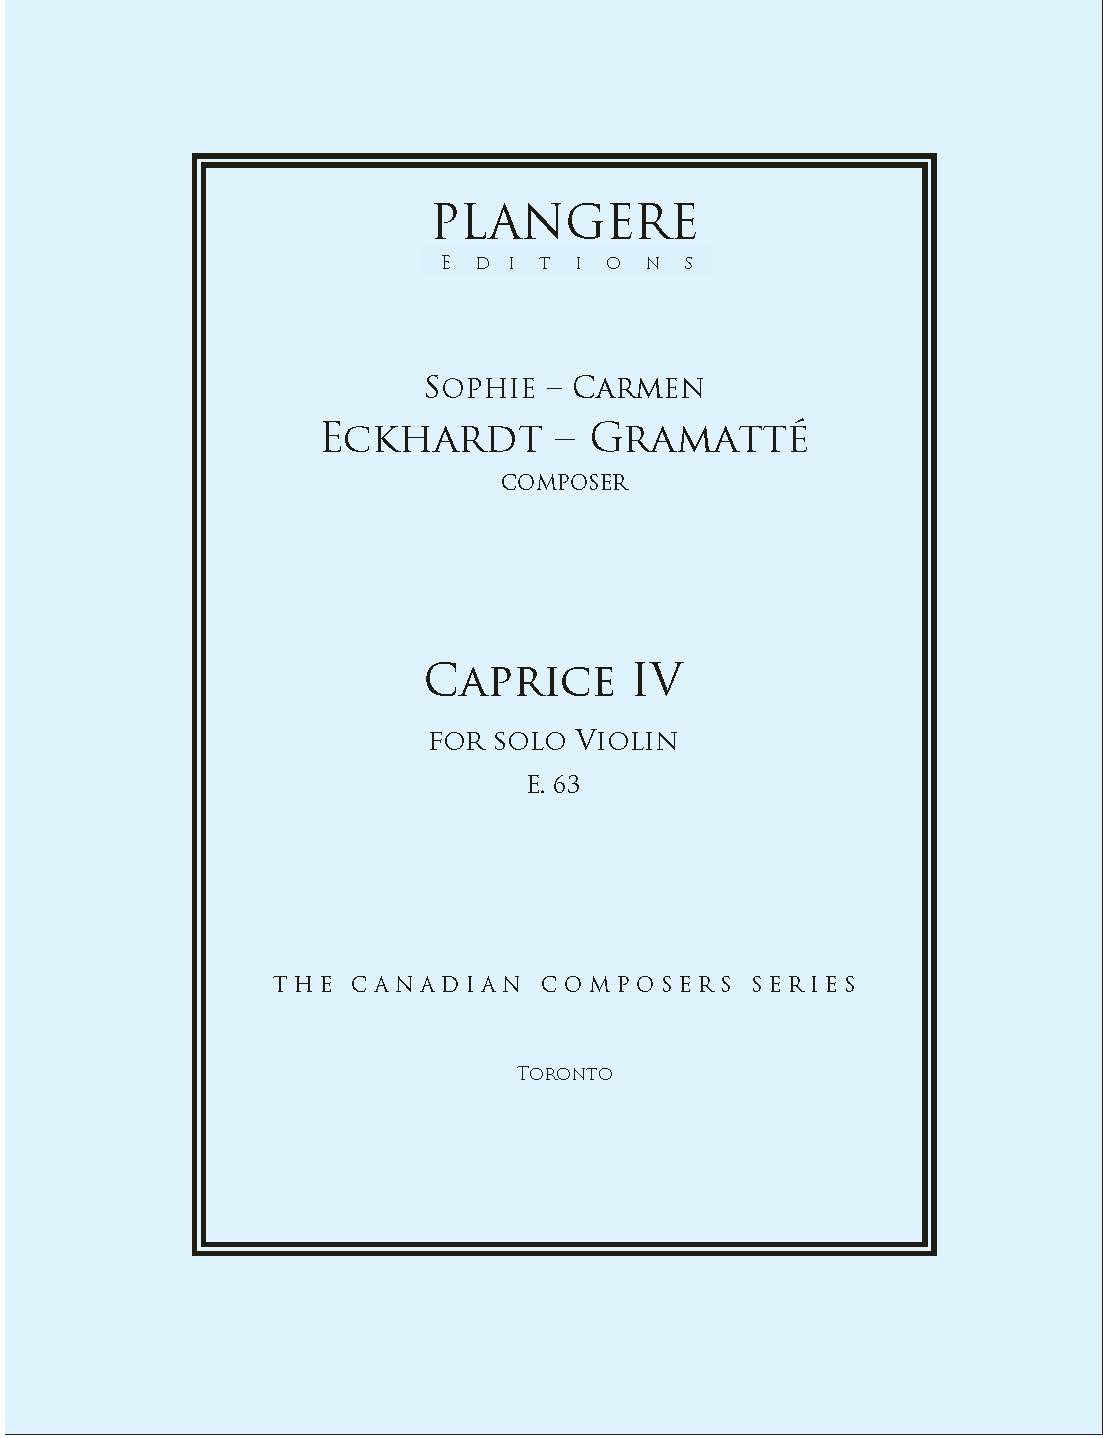 Caprice IV for solo Violin  E. 63